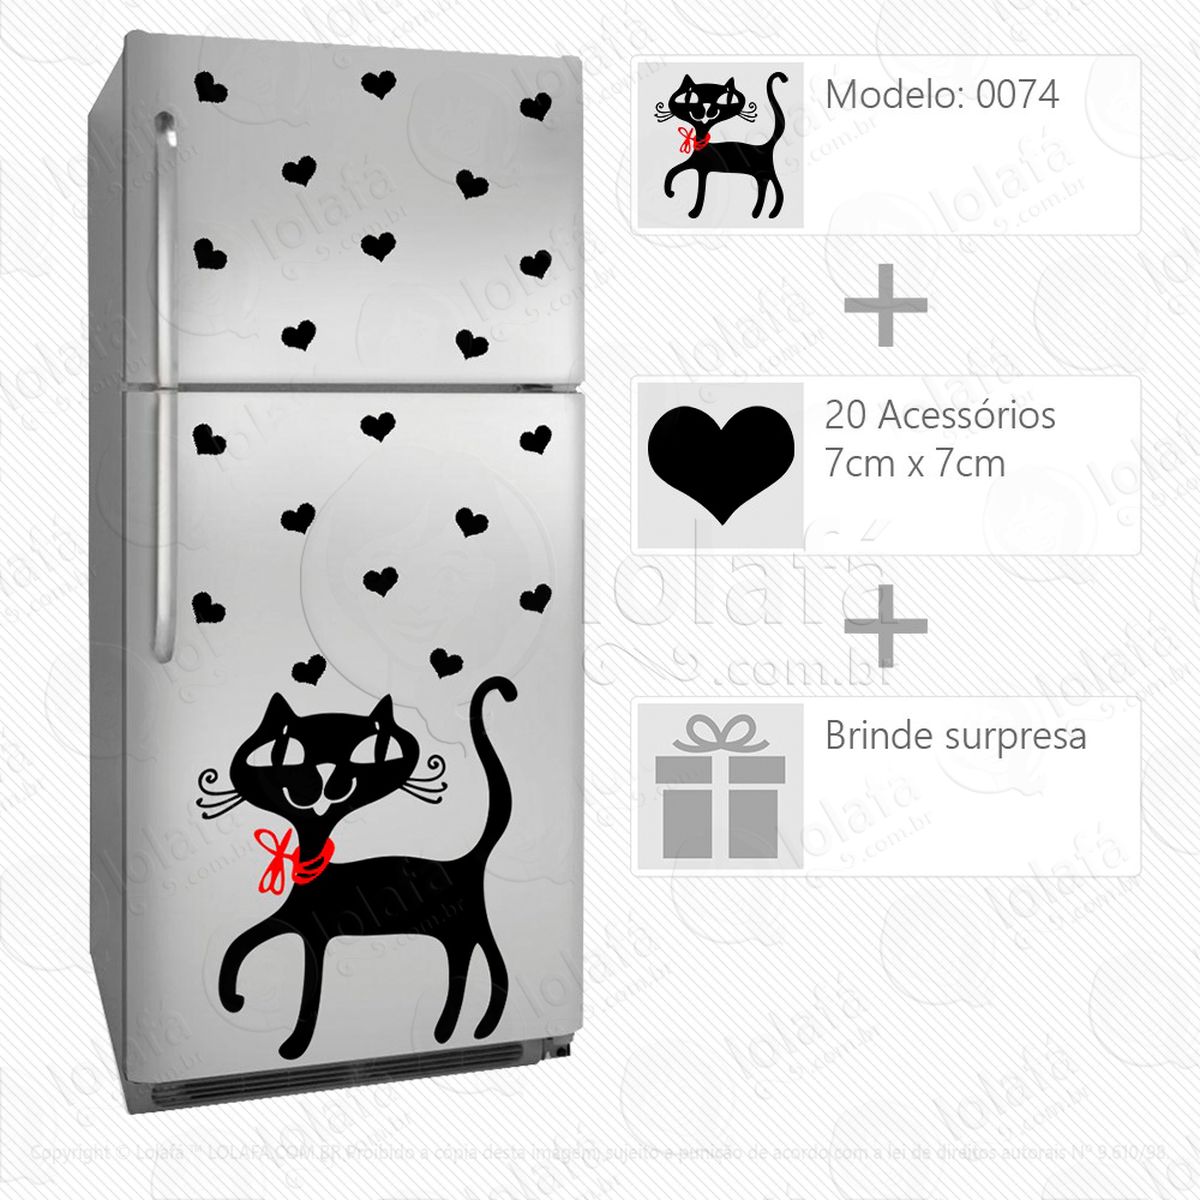 gato adesivo para geladeira e frigobar - mod:74